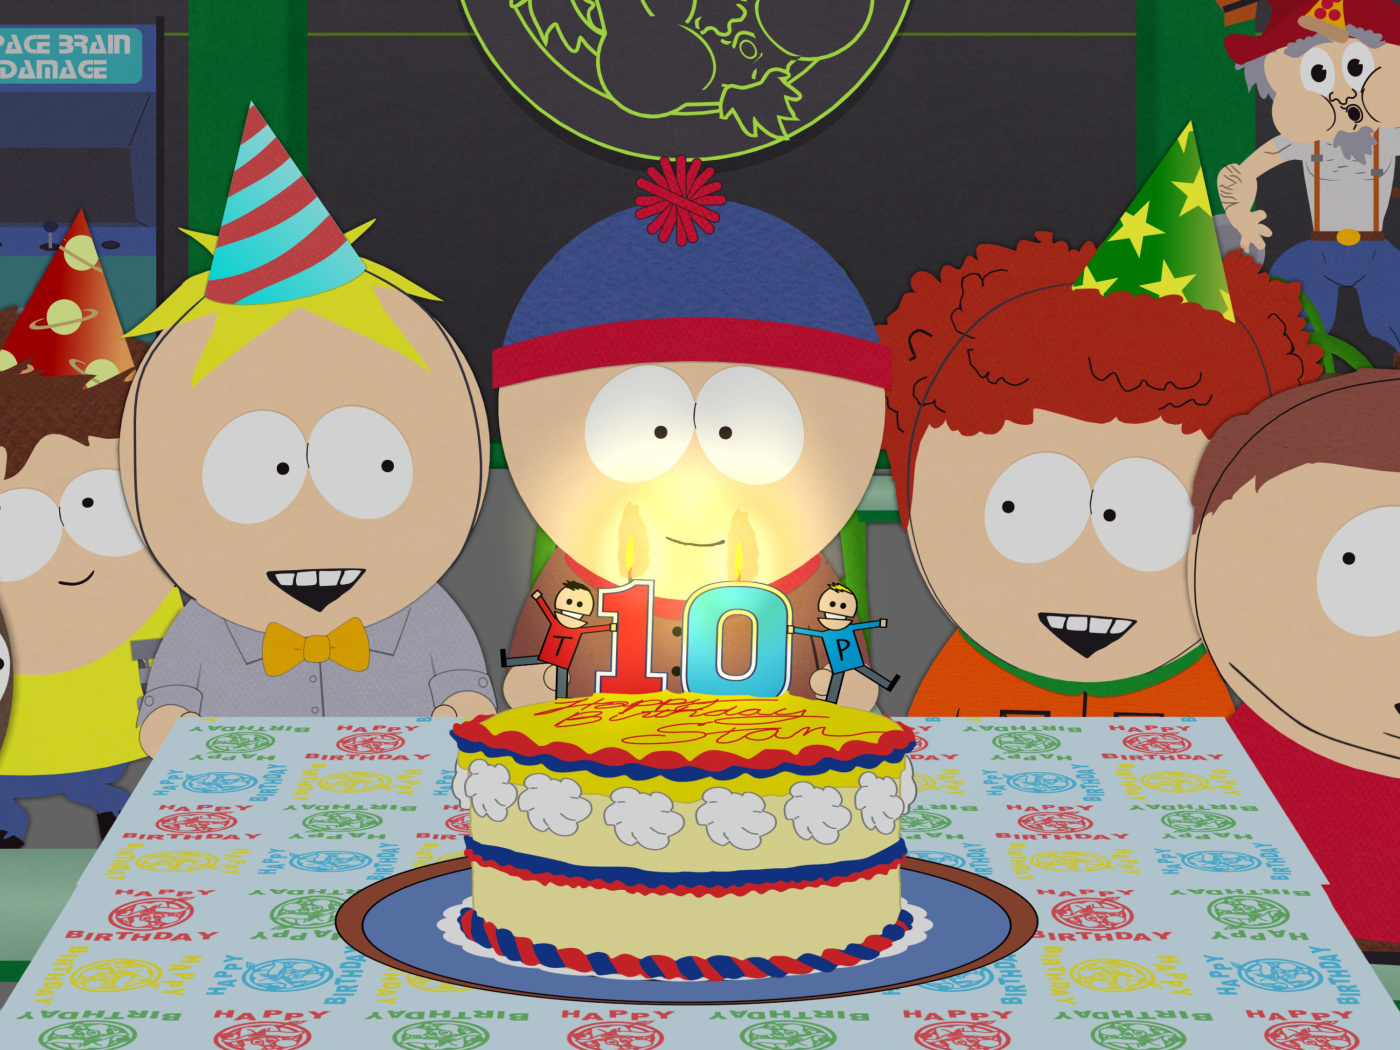 South Park Season 15 Stans Party wallpaper 1400x1050